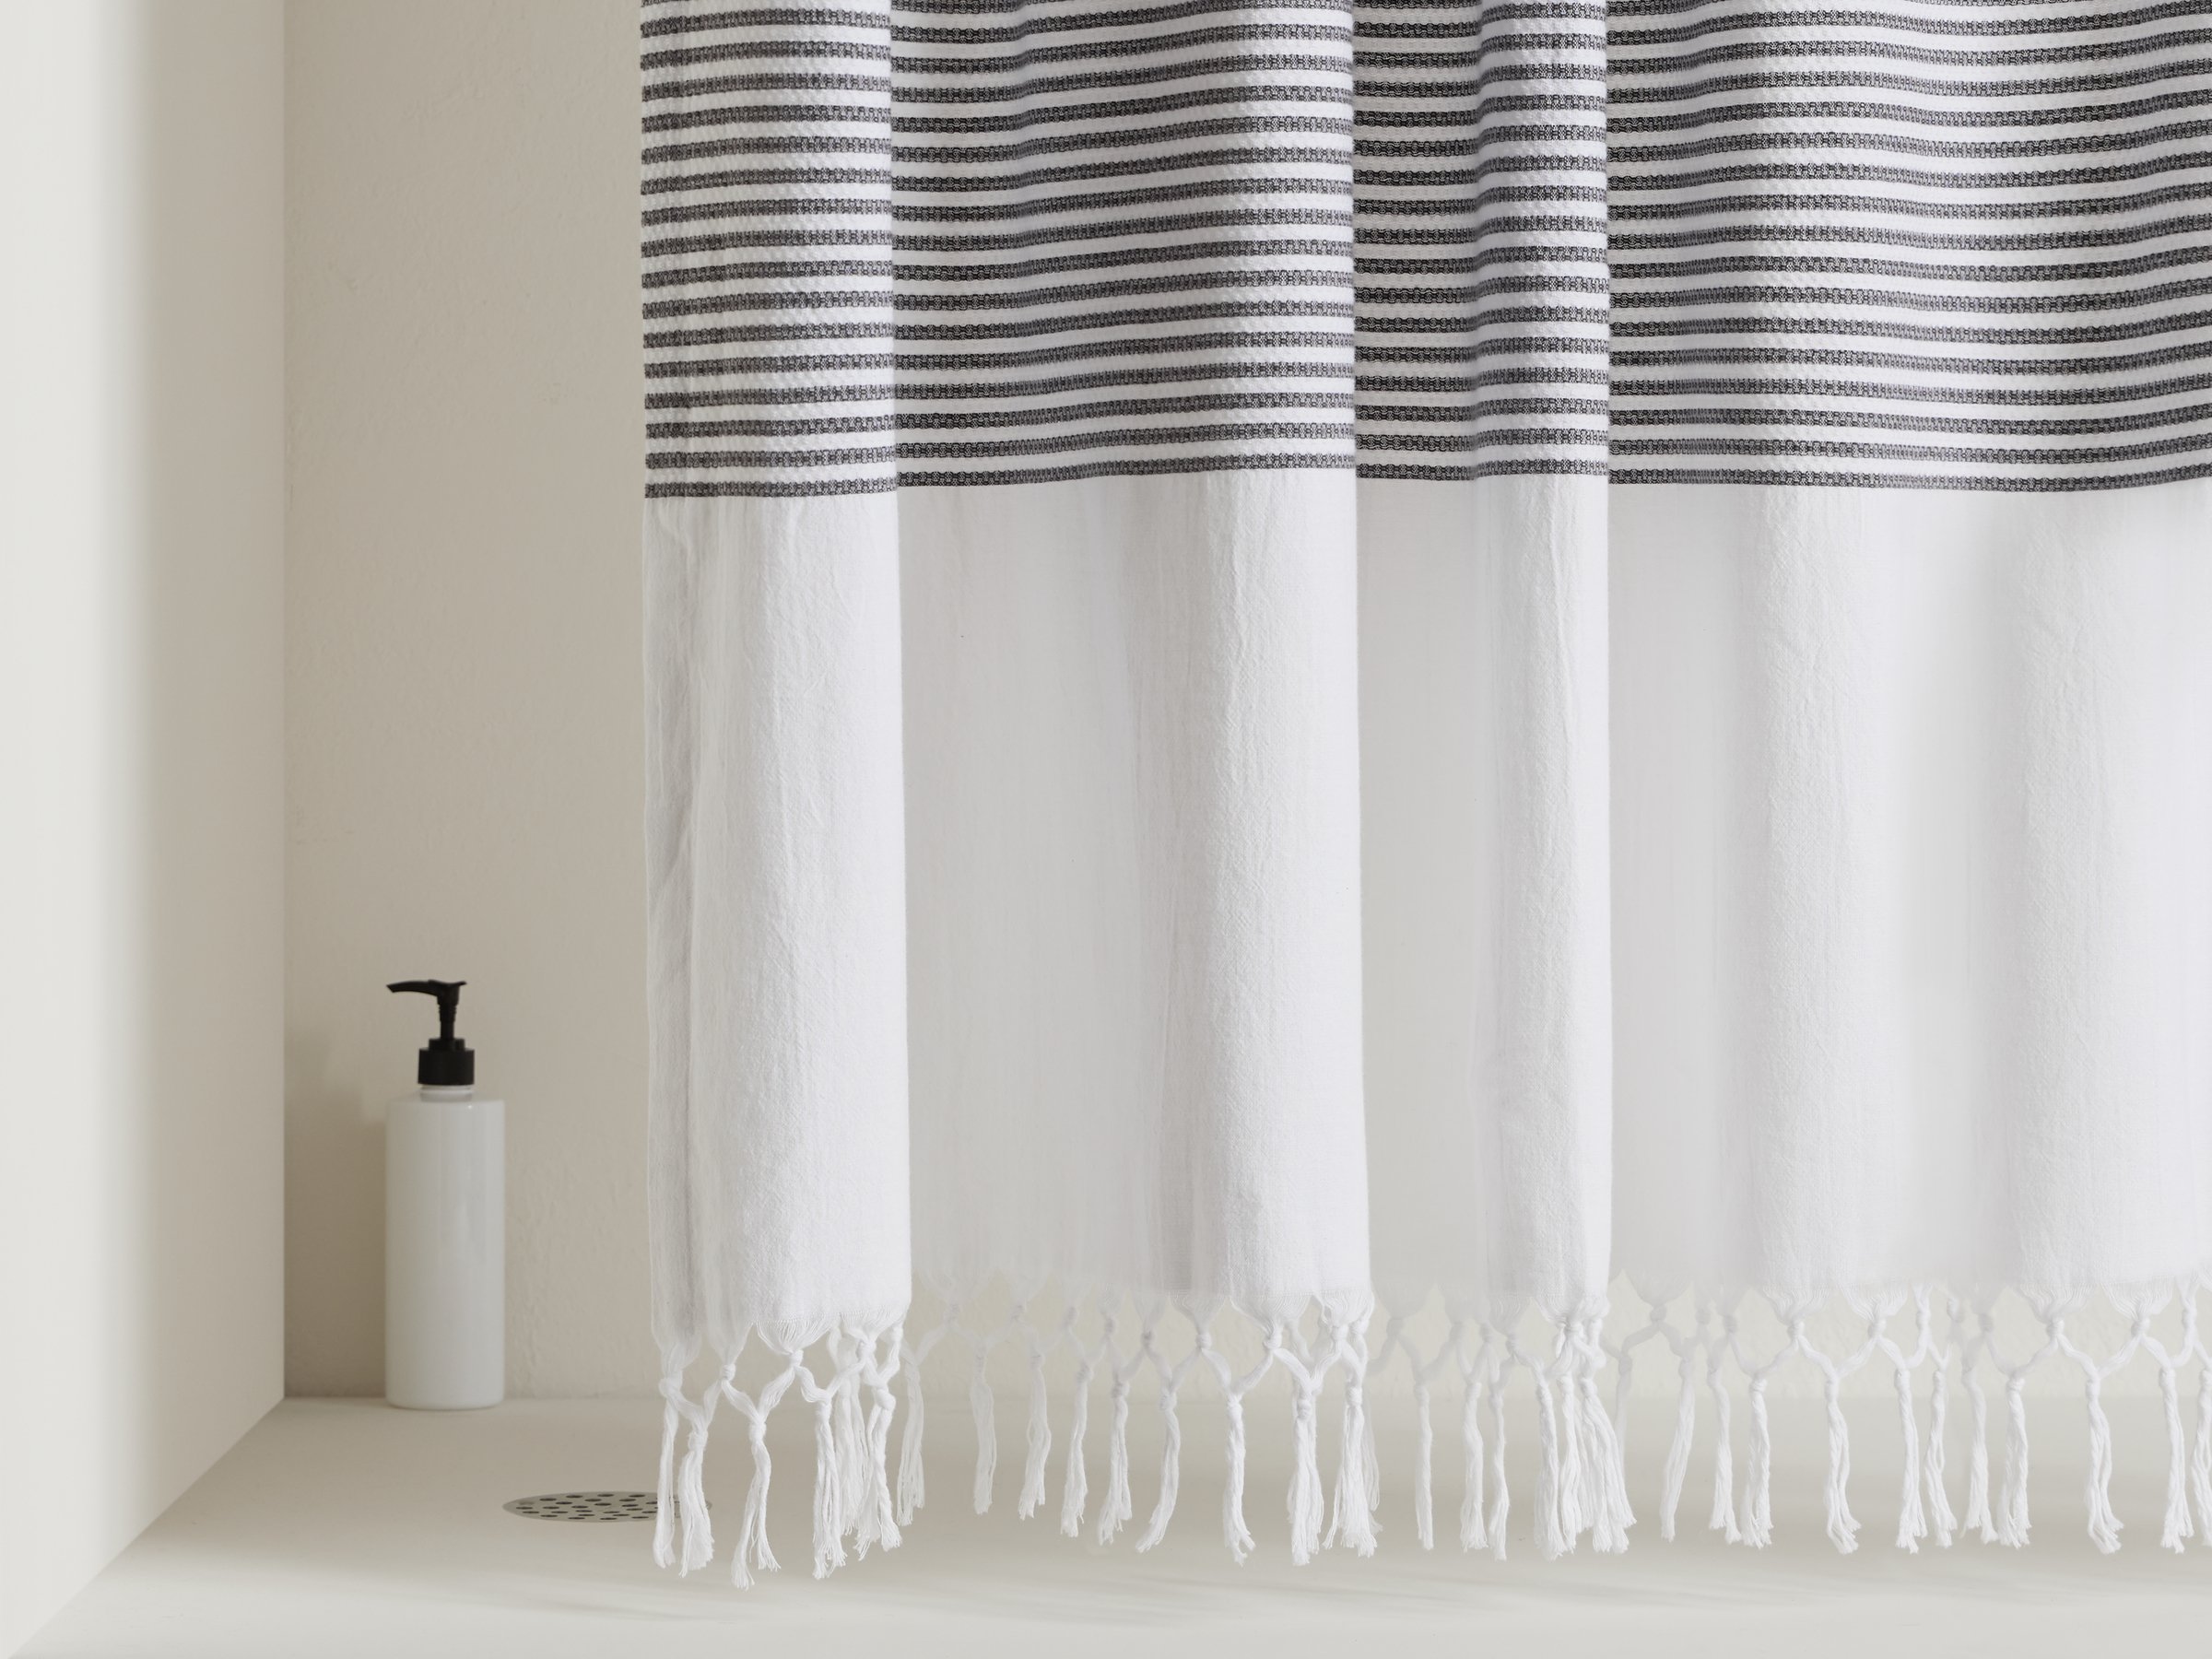 Indigo Turkish Shower Curtain